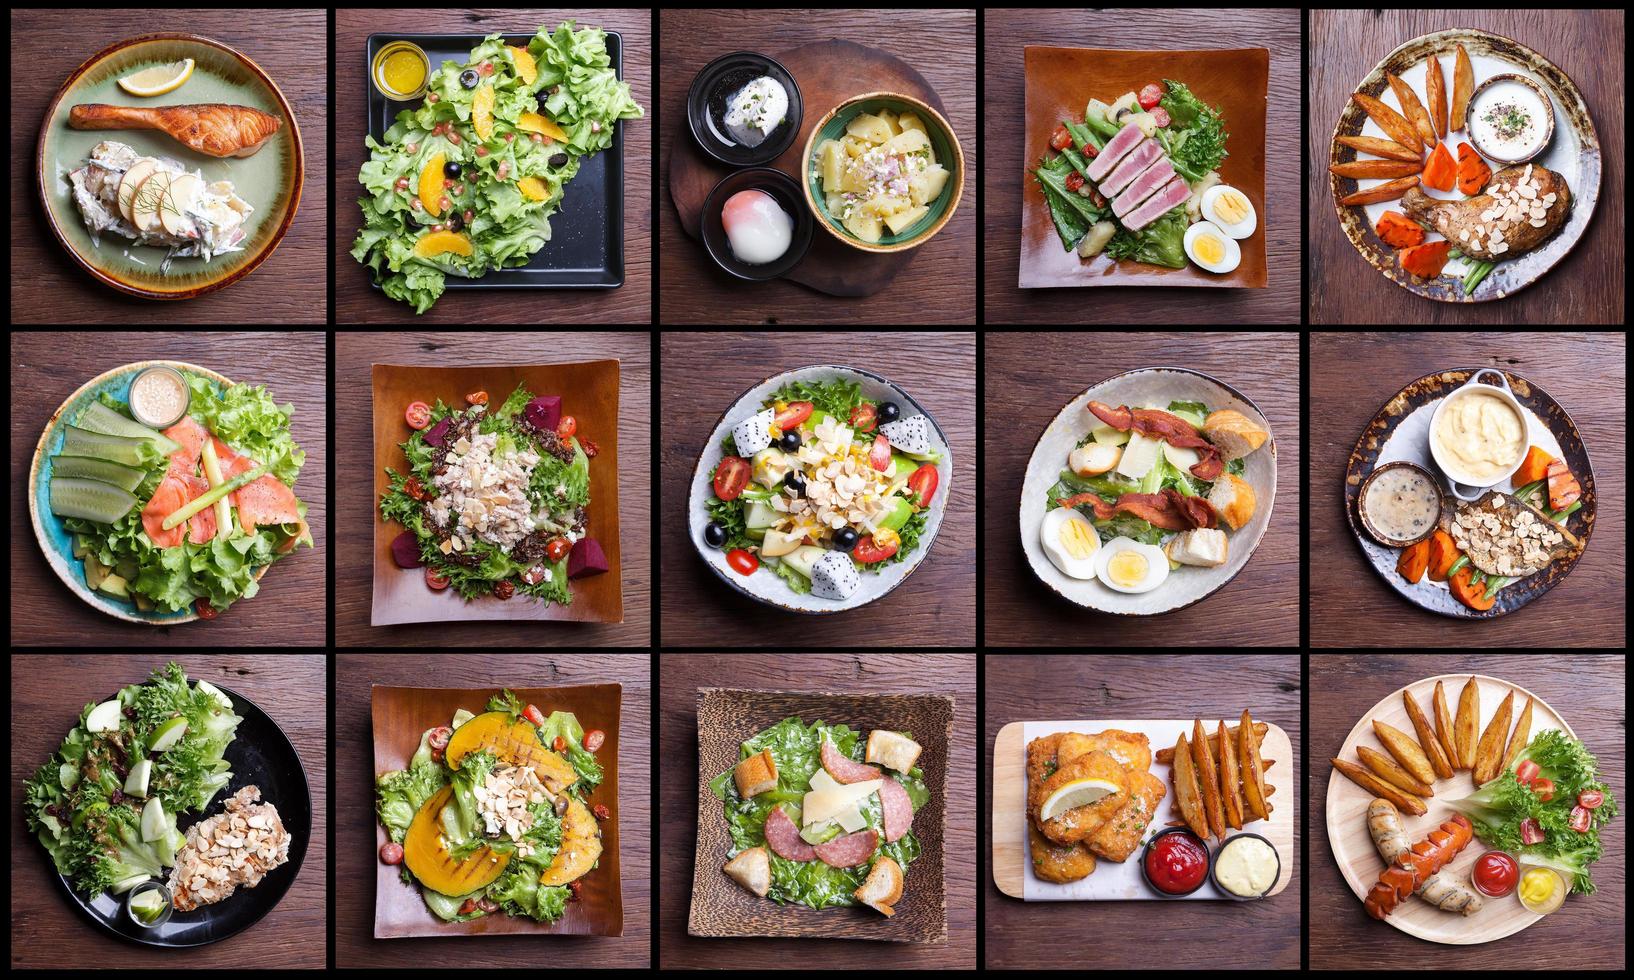 einschließlich Salatset für gesunde Lebensmittel. Obstsalat, Schinkenspeck, Lachs, Caesar-Salat, Thunfischsalat, Fish and Chips, Hähnchenschenkel, geräucherte Wurst foto